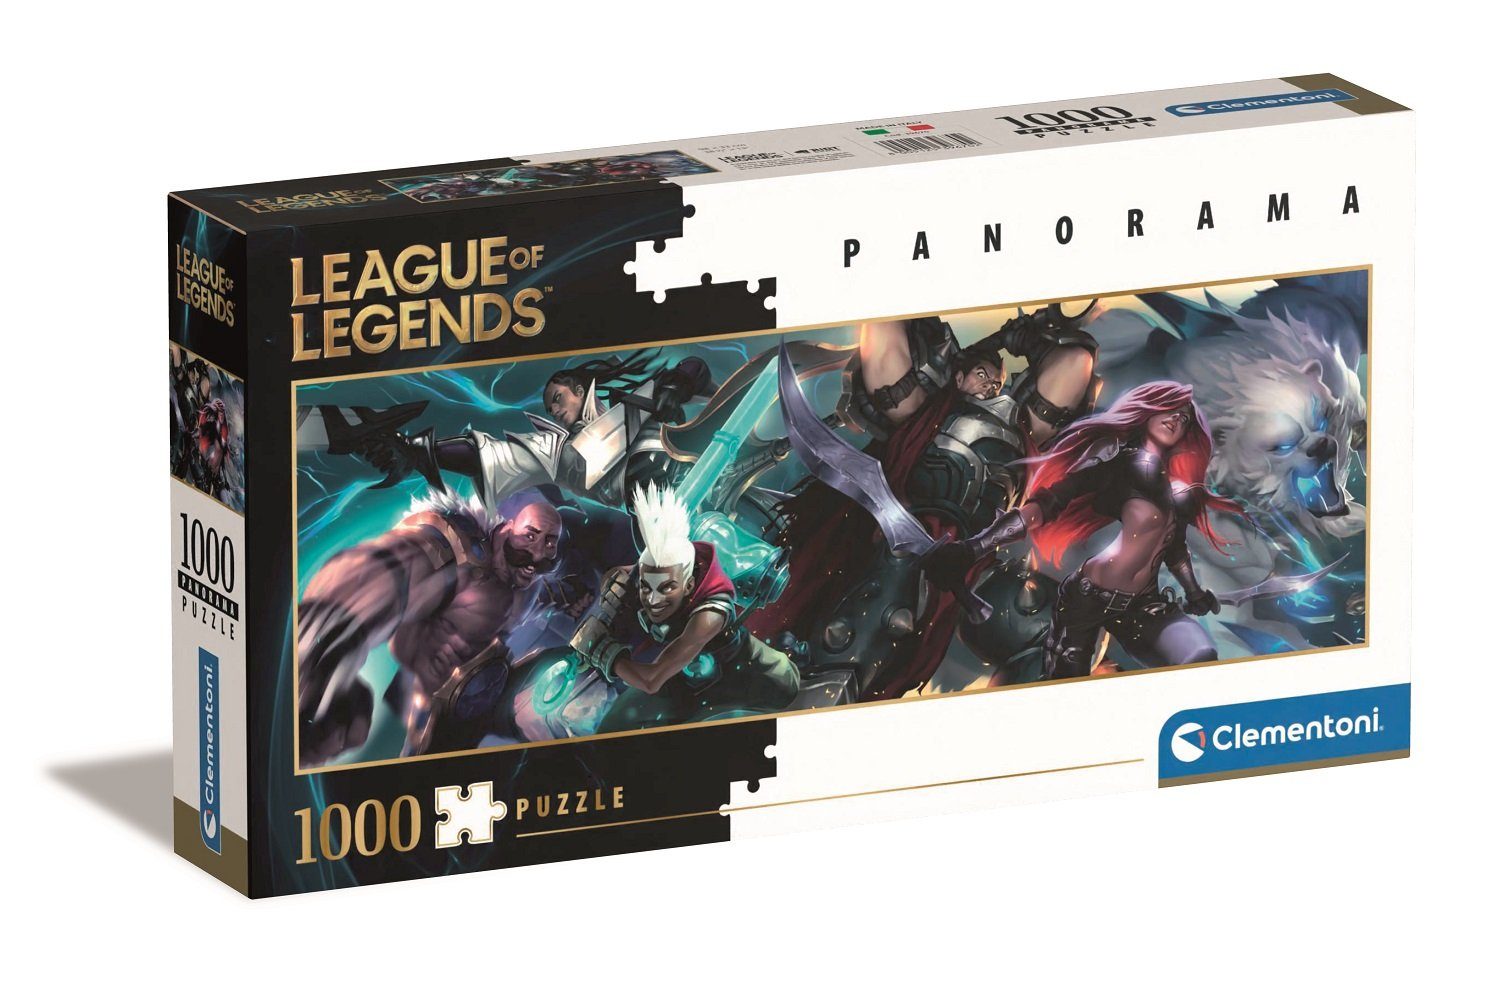 Legends Puzzle Puzzleteile Clementoni® Panorama Puzzle, League 1000 of